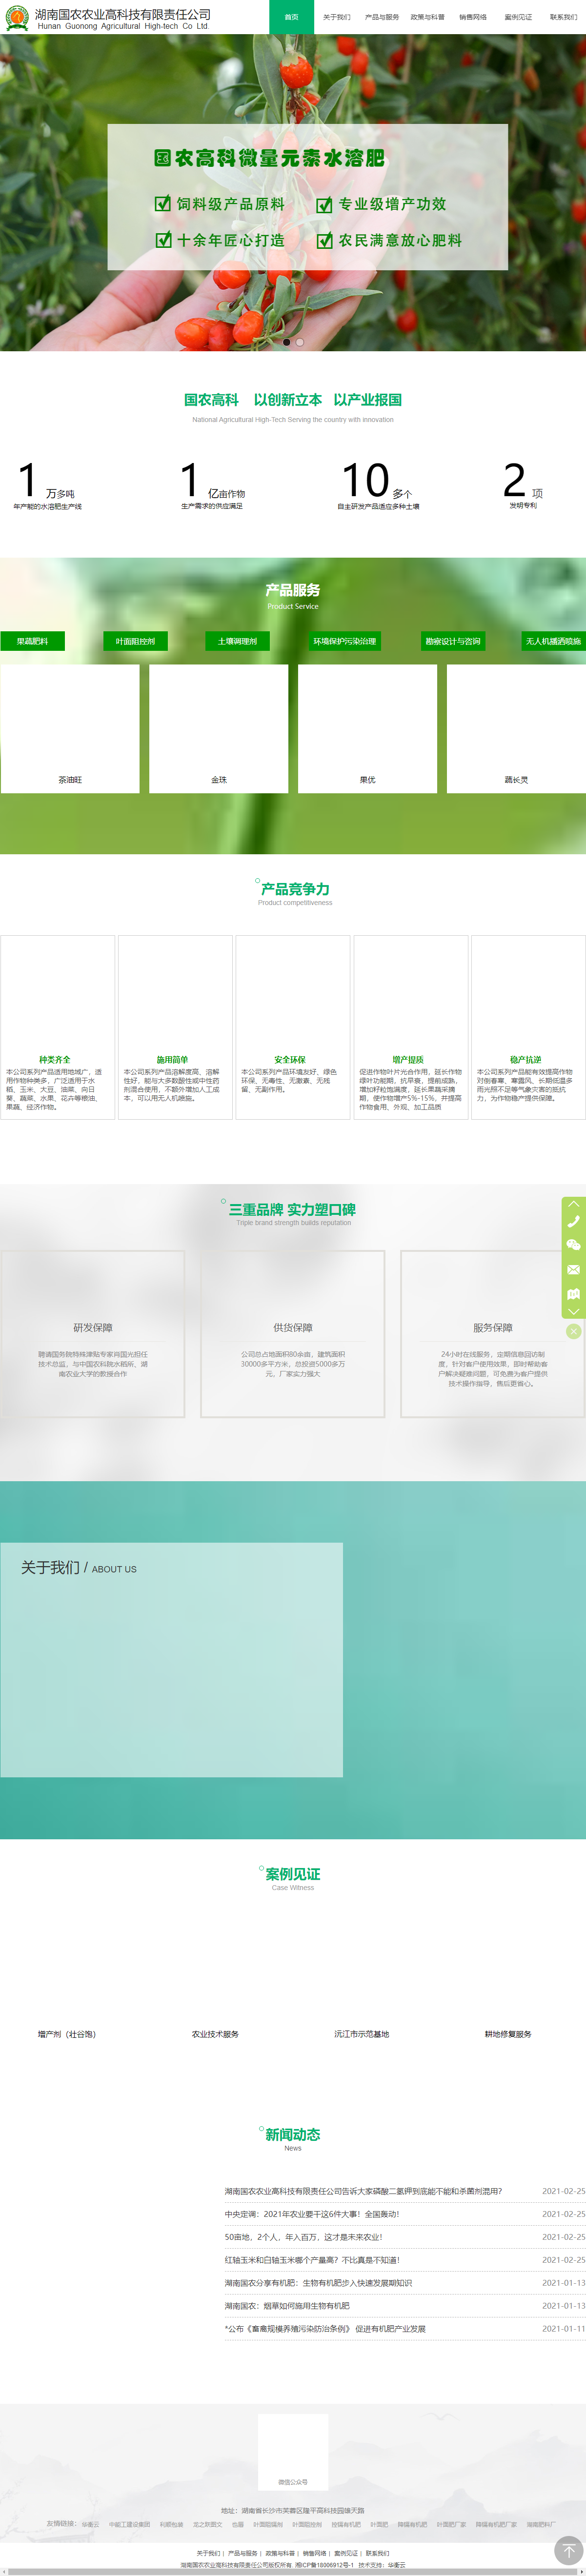 湖南国农农业高科技有限责任公司网站案例